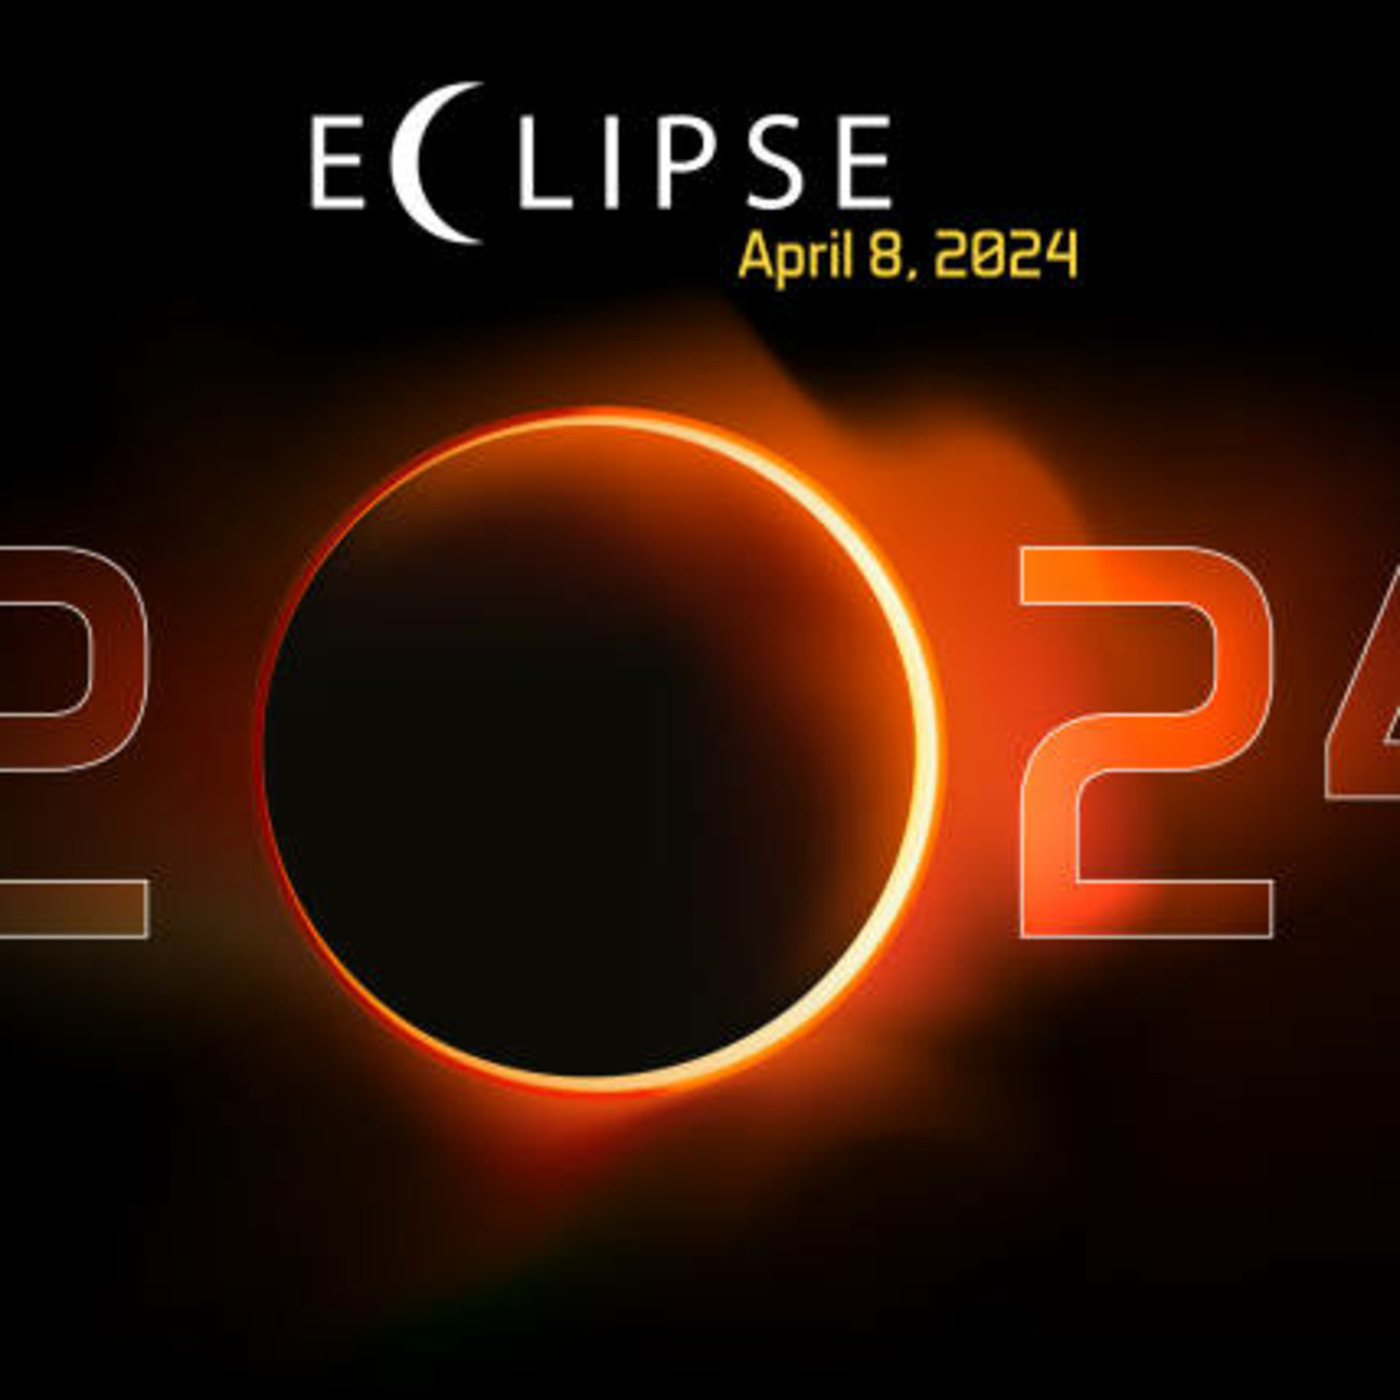 Episode 368: Eclipse Playlist